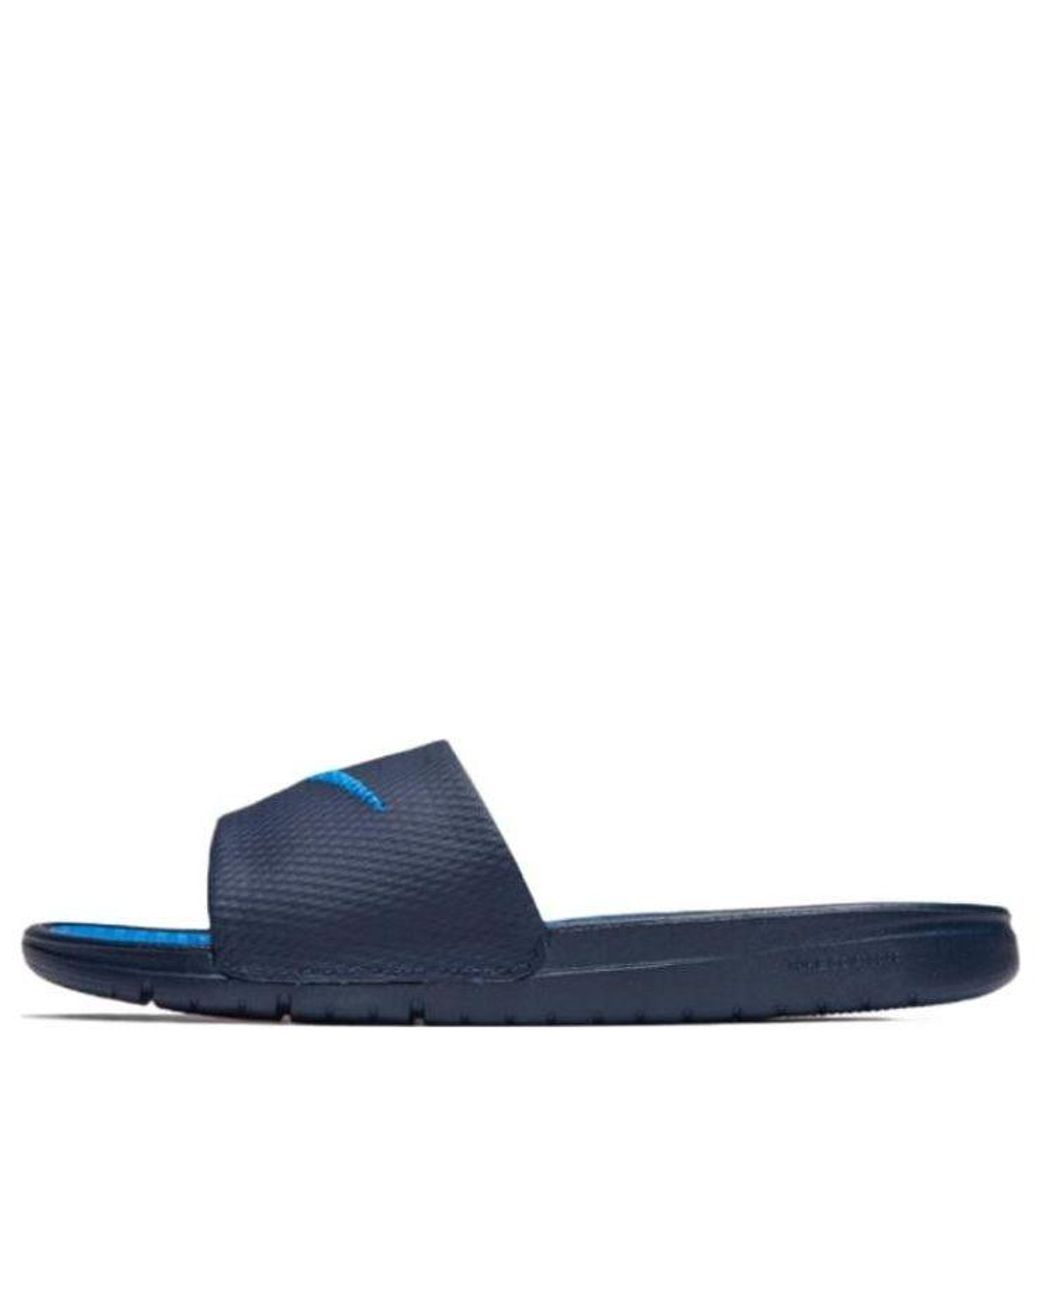 Nike Benassi Solarsoft Slide Sports Slippers Black Blue for Men | Lyst